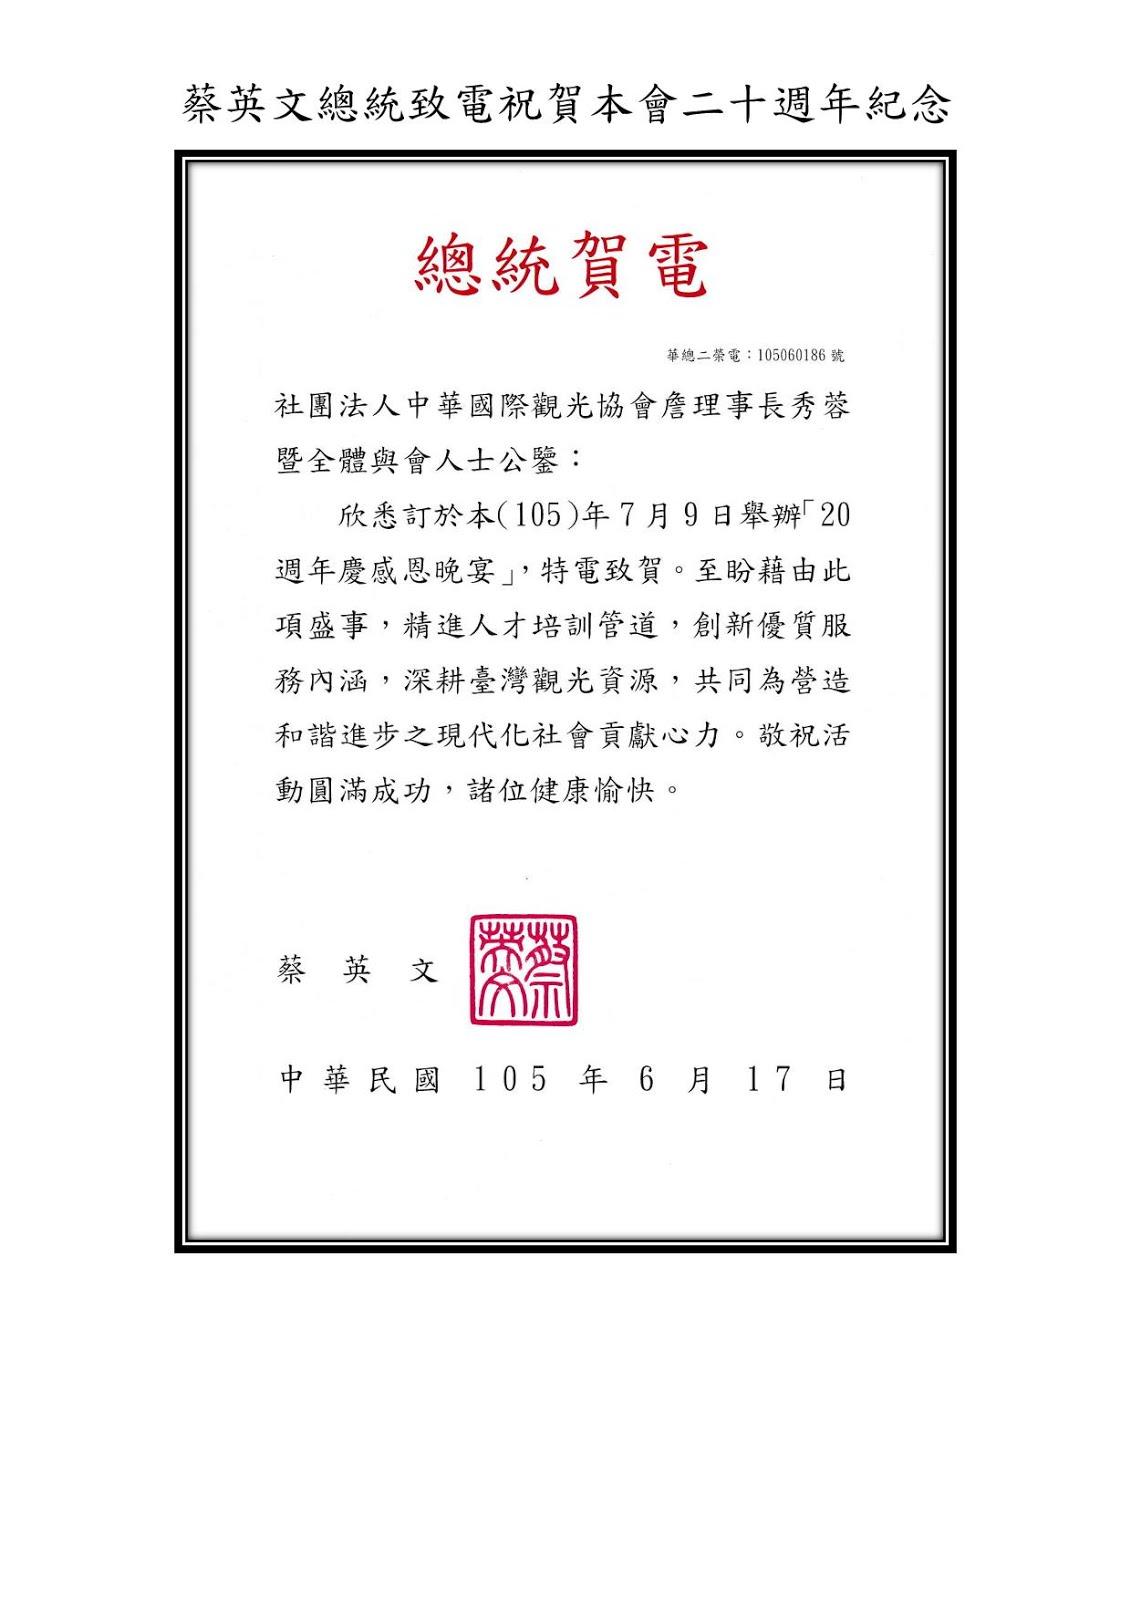 蔡英文總統致電祝賀本會二十周年慶感恩餐會 中華國際觀光協會